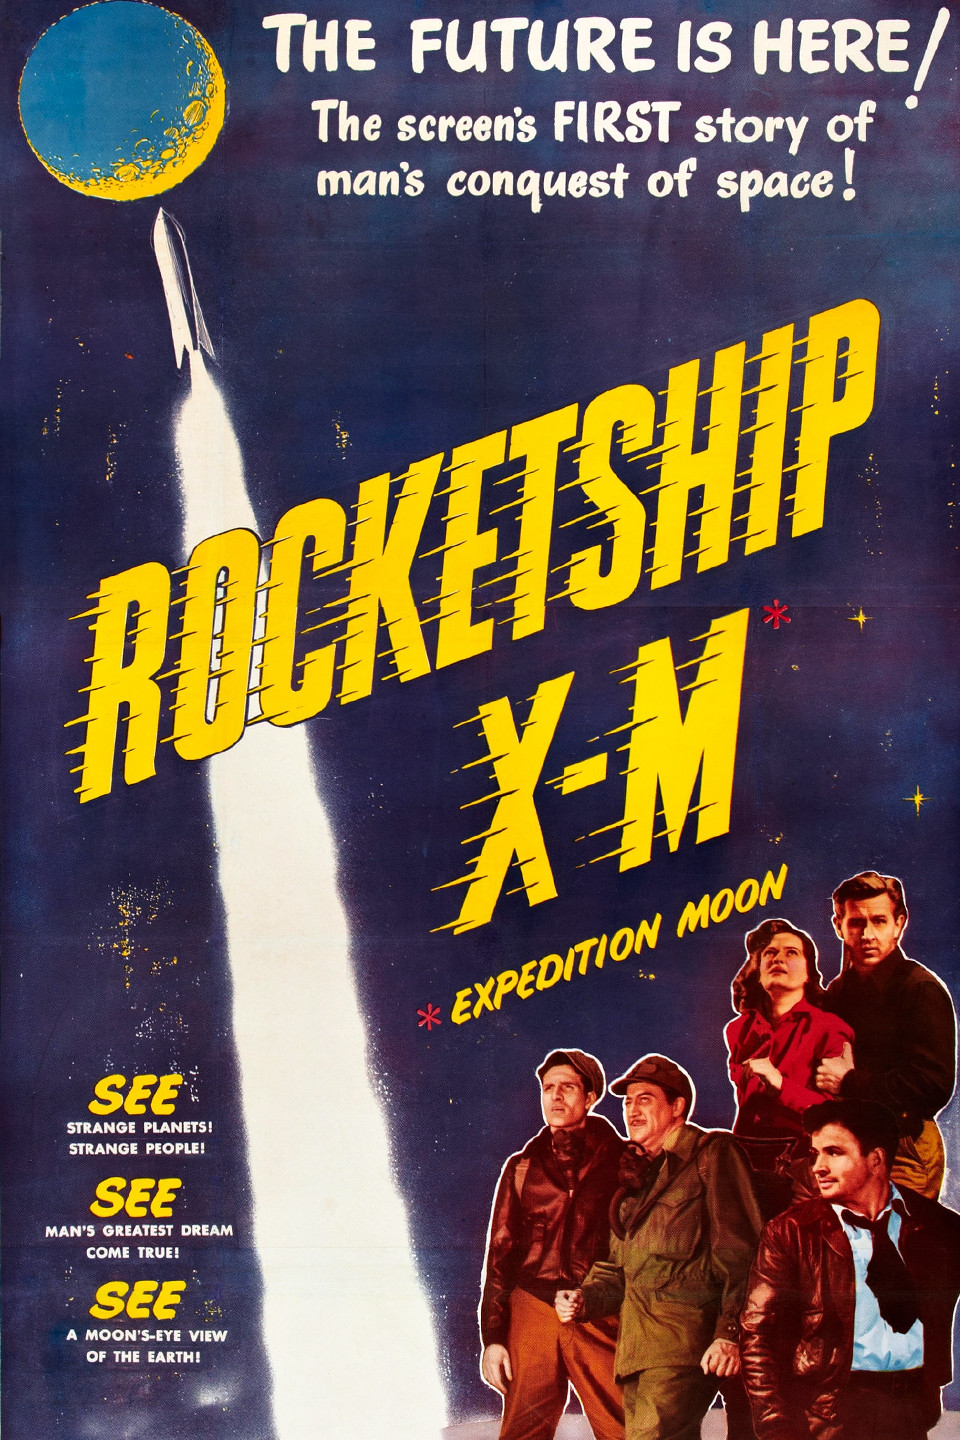 a rocketship